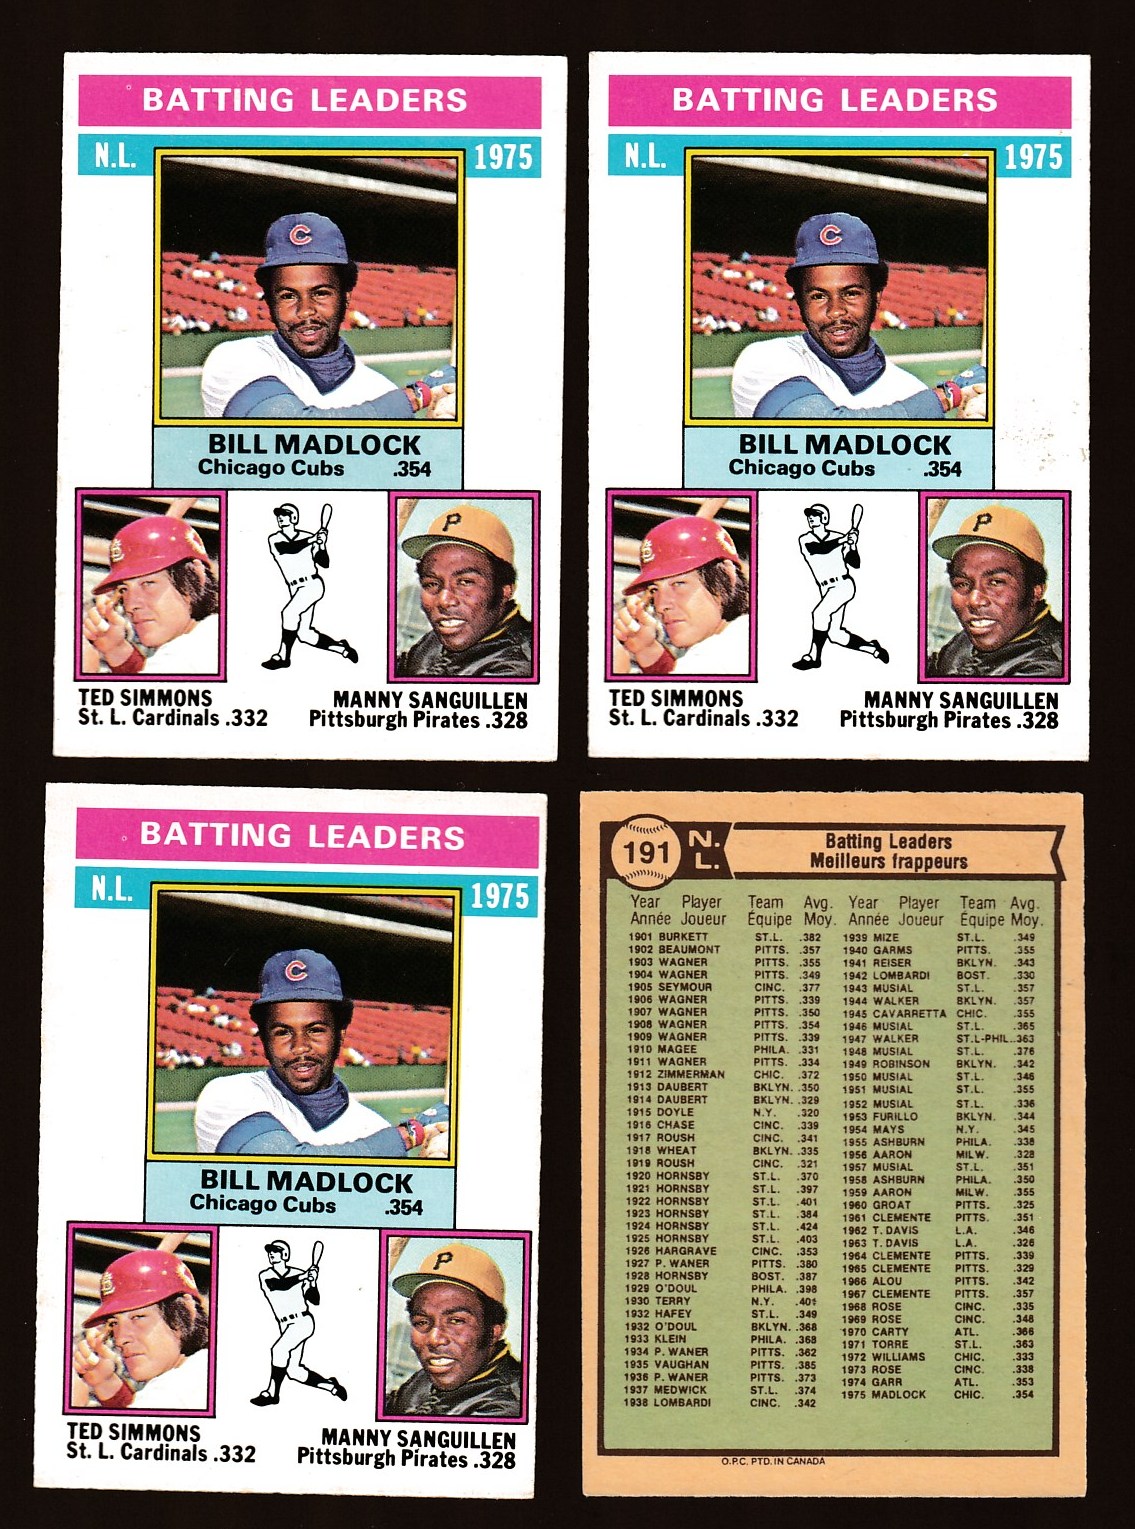 1981 Topps #226 Manny Sanguillen DP VG Pittsburgh Pirates - Under